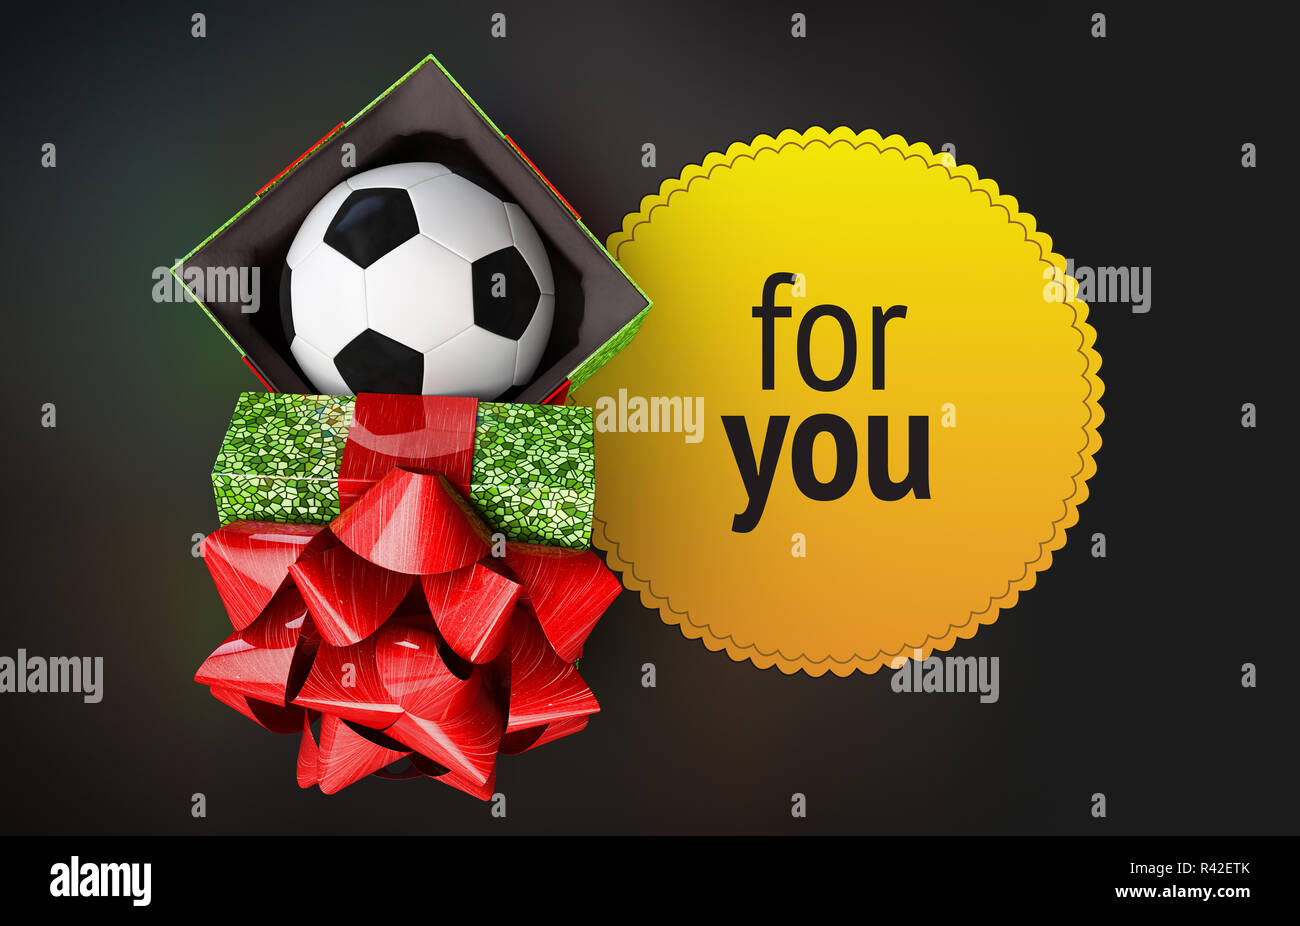 Glänzend Geschenkverpackung Fussball bal Ribbon gelb Abzeichen dunklen Hintergrund rendern Stockfoto